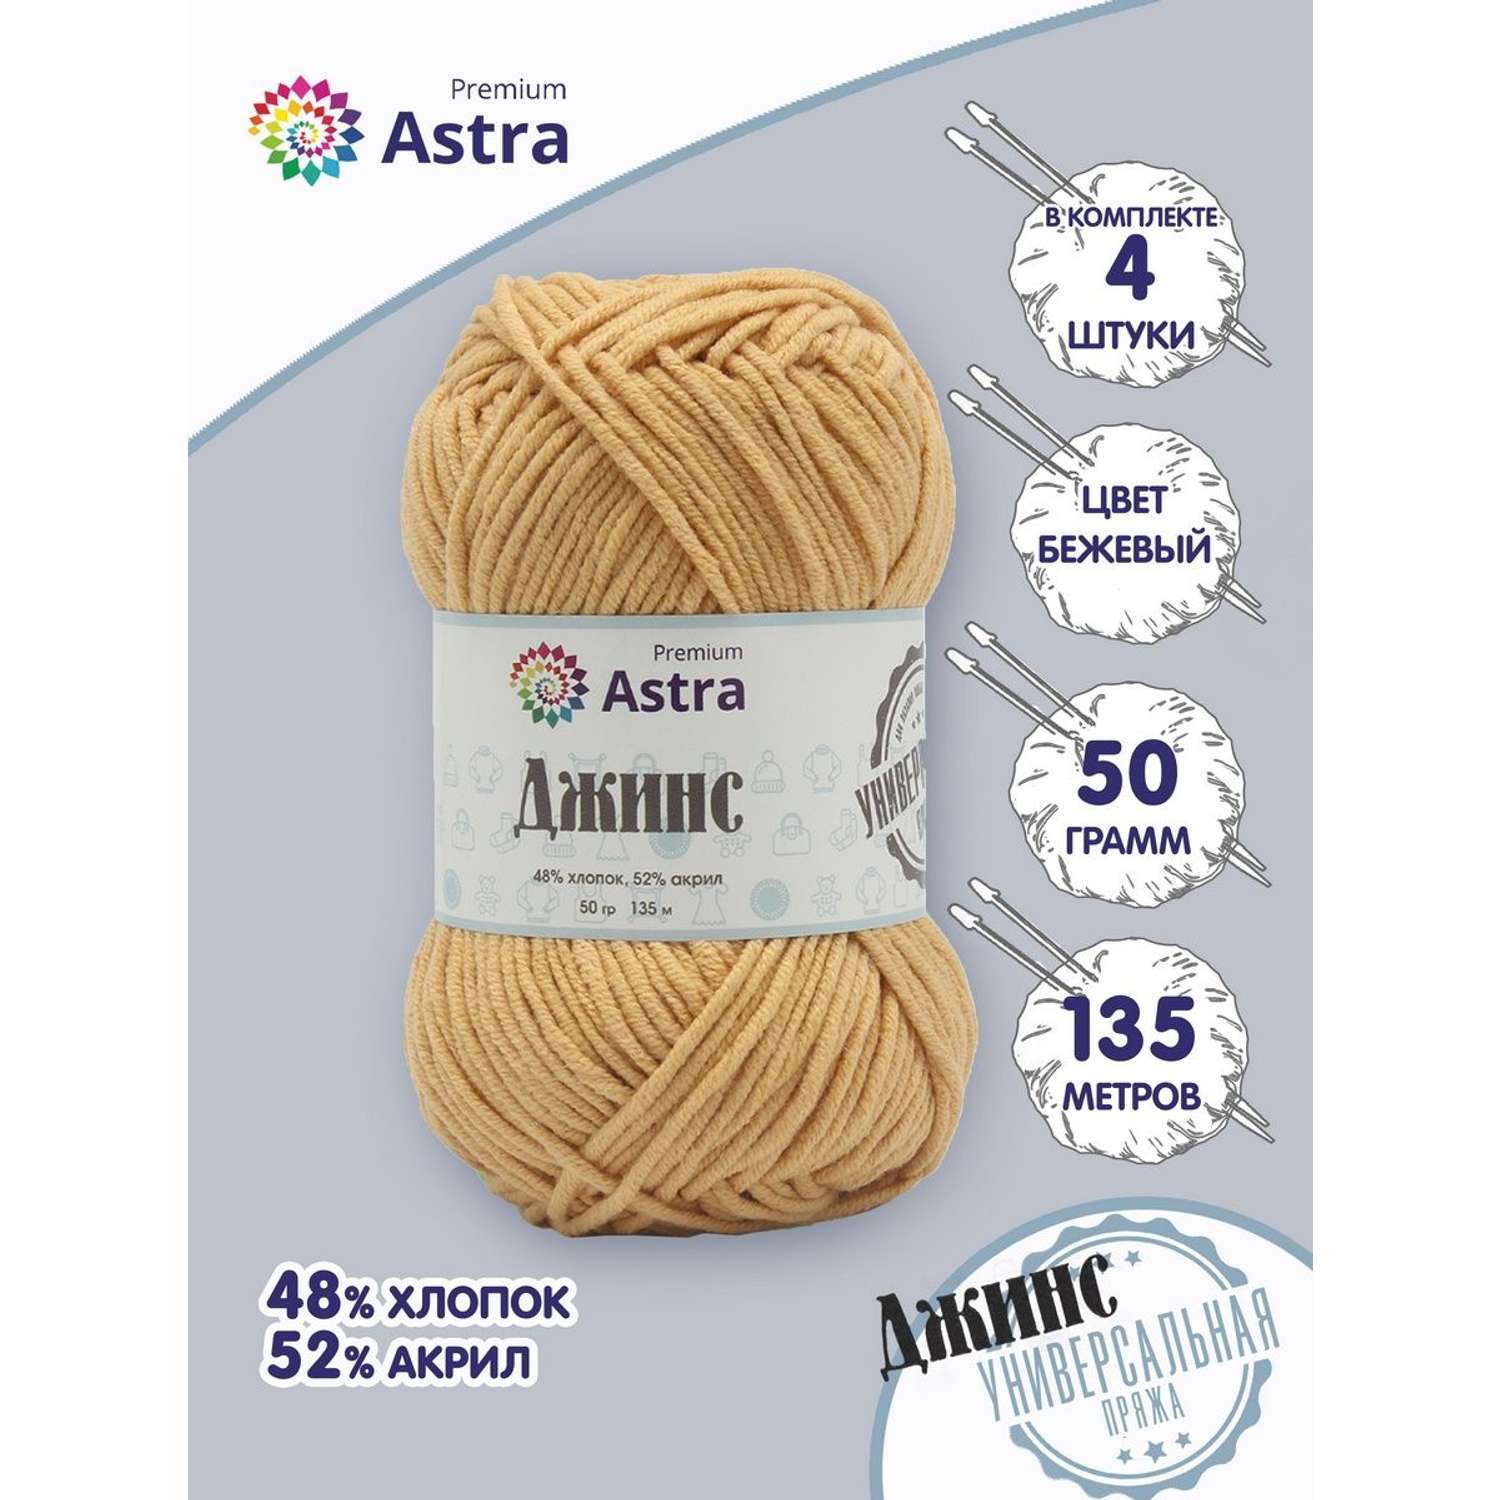 Пряжа для вязания Astra Premium джинс для повседневной одежды акрил хлопок 50 гр 135 м 810 бежевый 4 мотка - фото 1